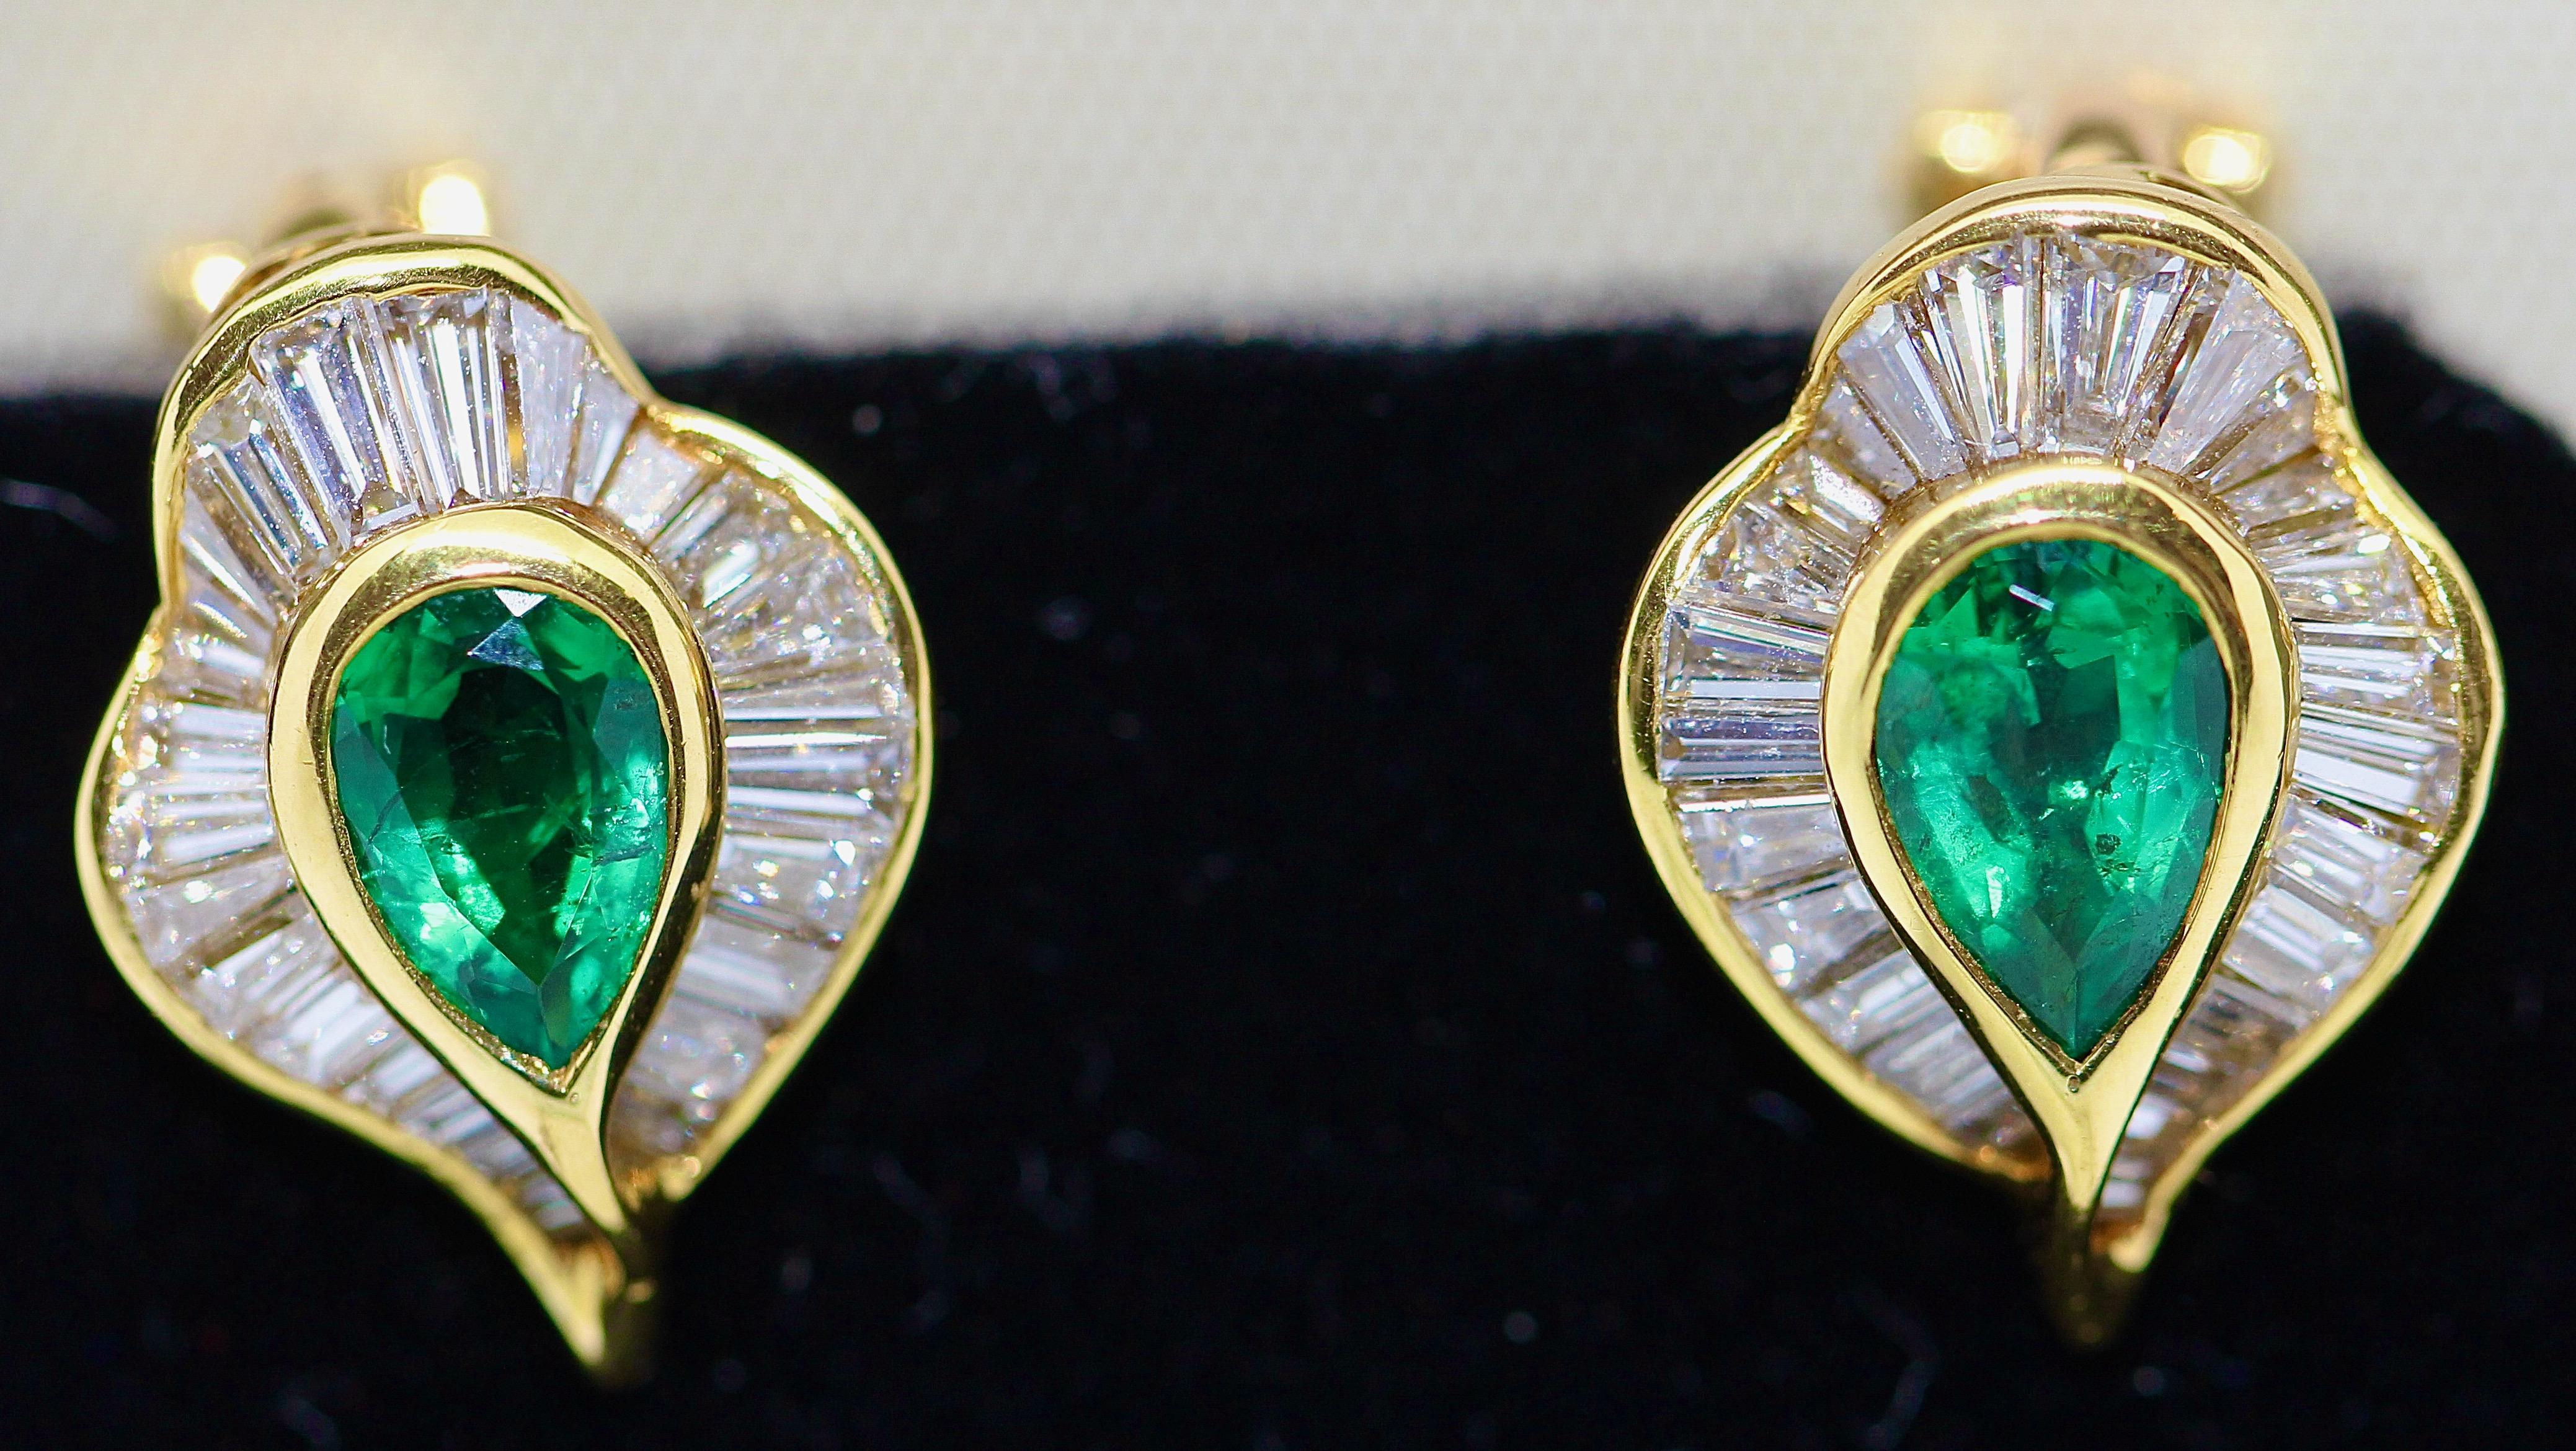 Modern Emerald Stud Earrings with 55 Diamonds, by Hans Stern, 18 Karat Gold